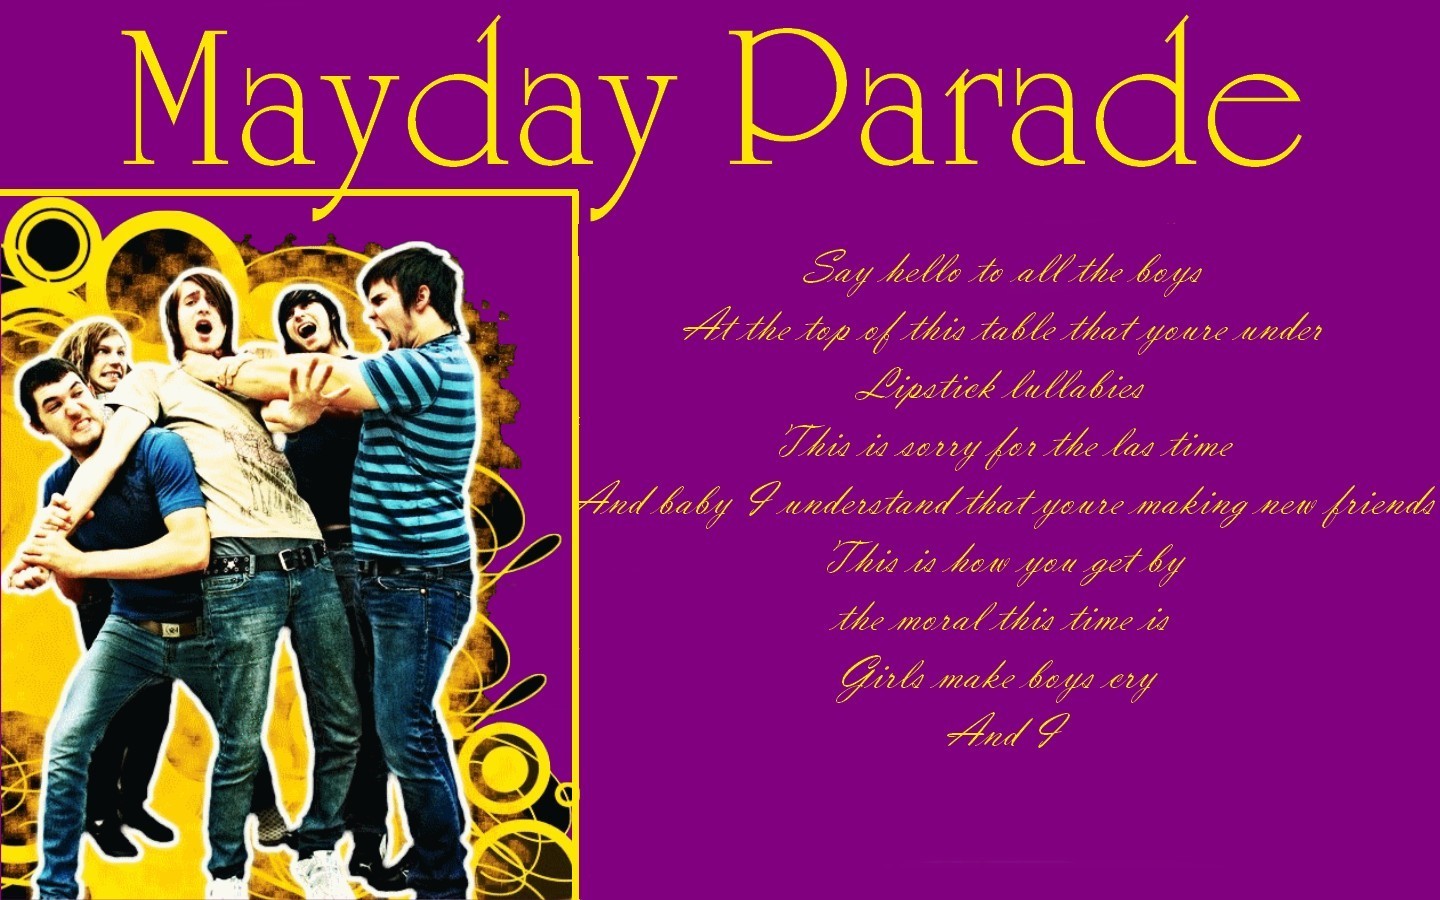 Mayday Parade - Mayday Parade Wallpaper (7443166) - Fanpop